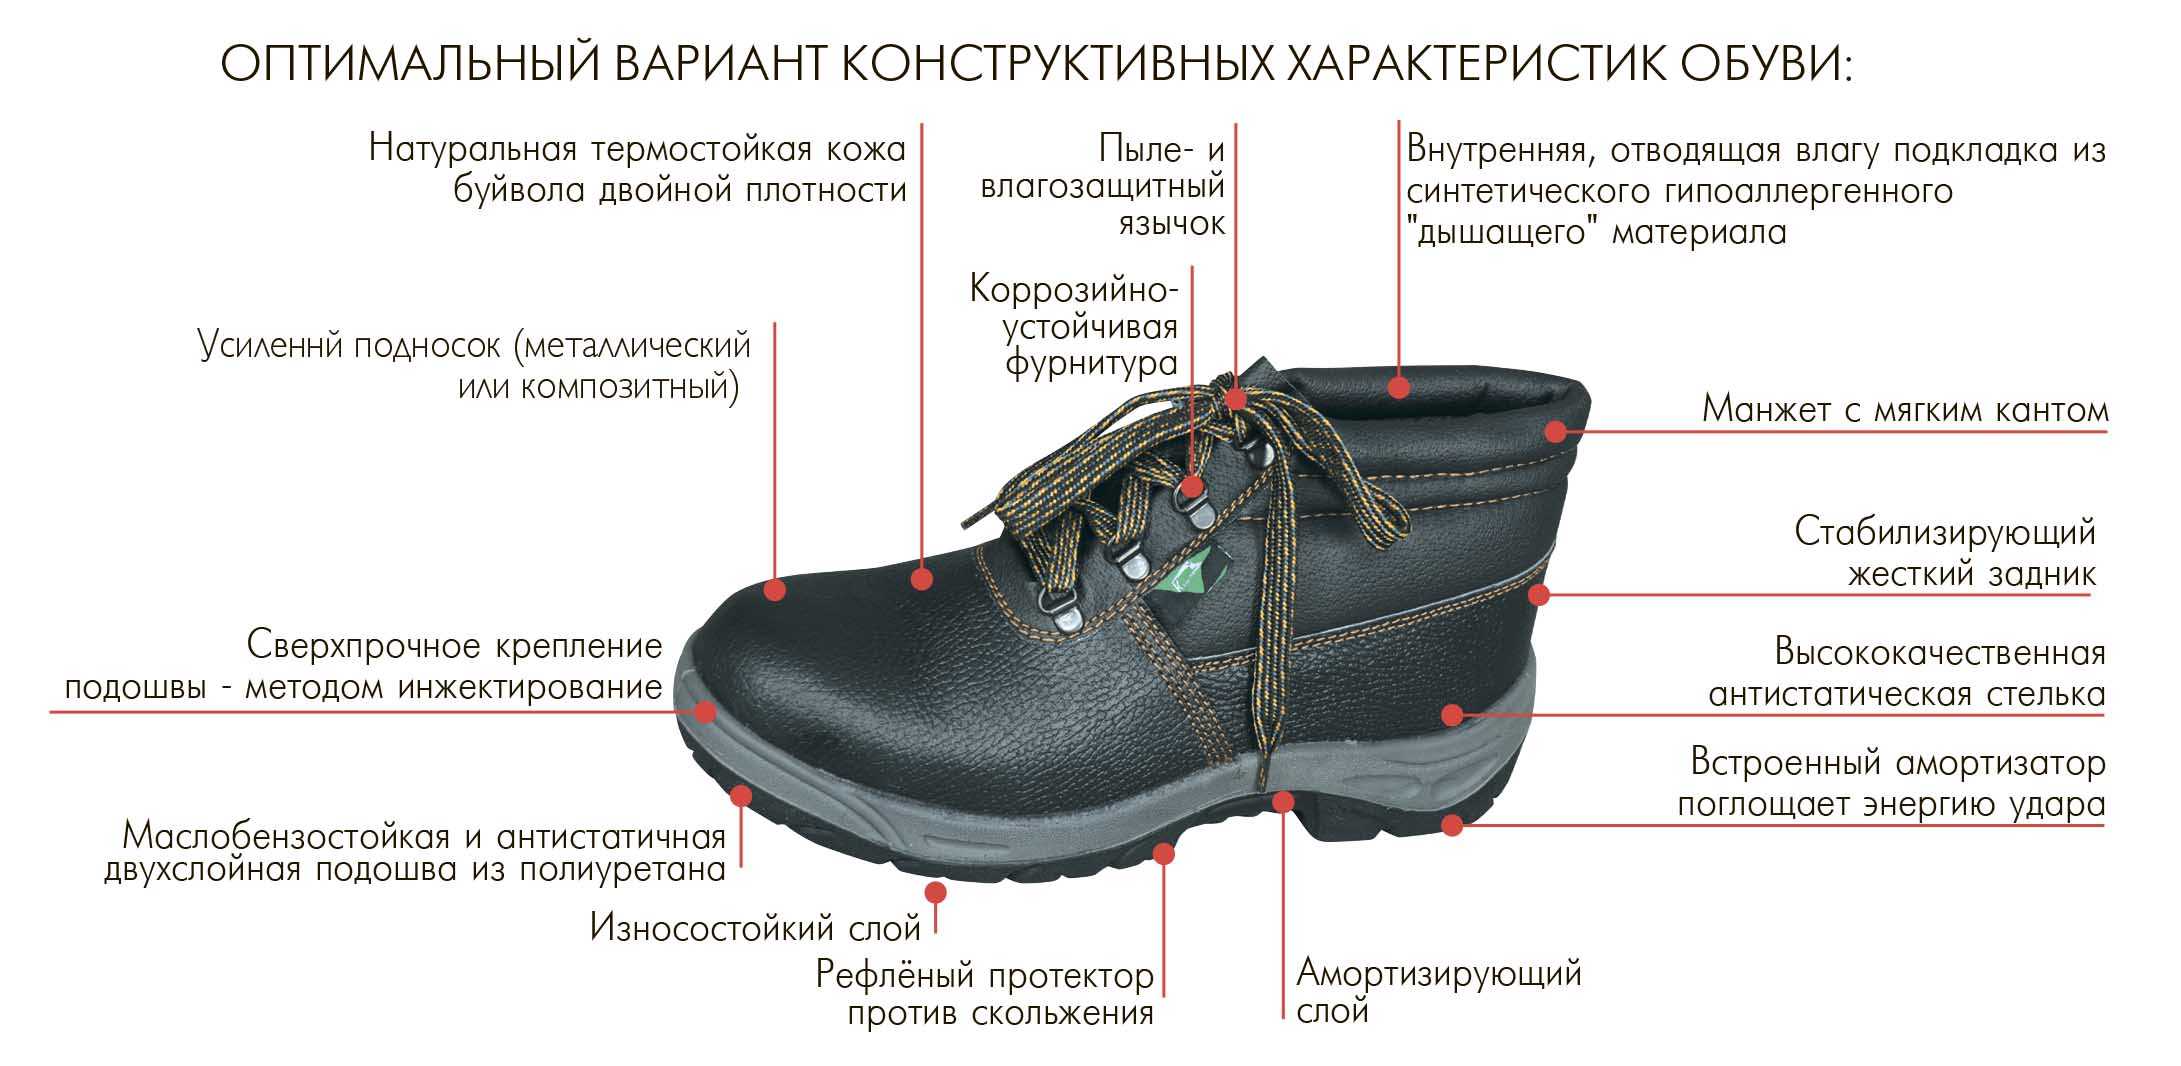 При длительном использовании подошва обуви. Строение ботинка. Специальная обувь для рабочих. Ботинки для производства.